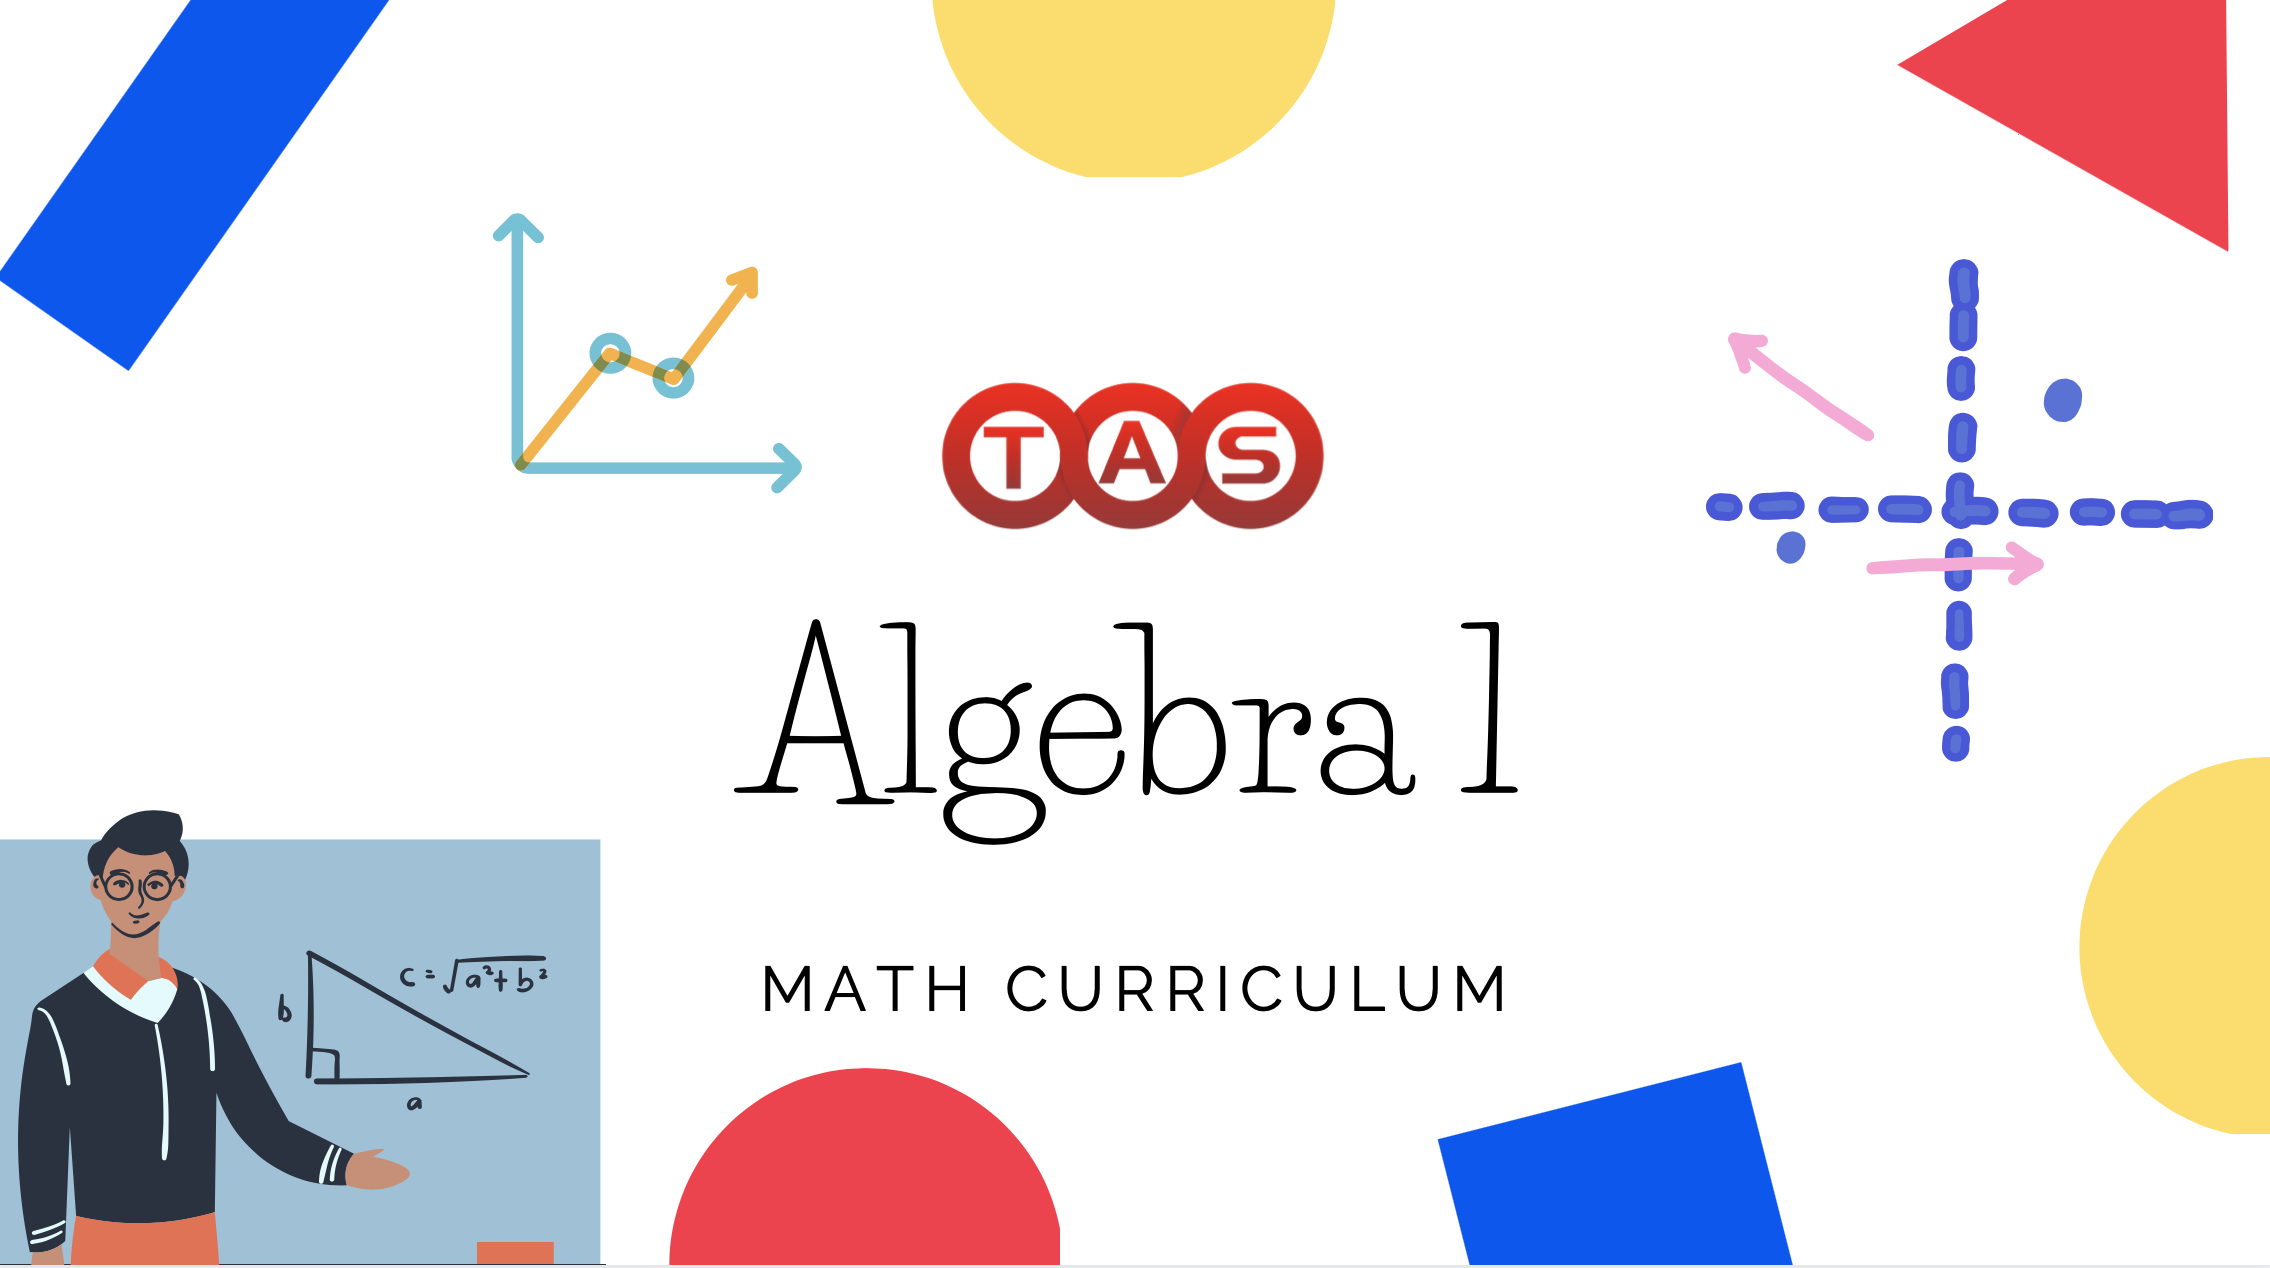 algebra 1 curriculum